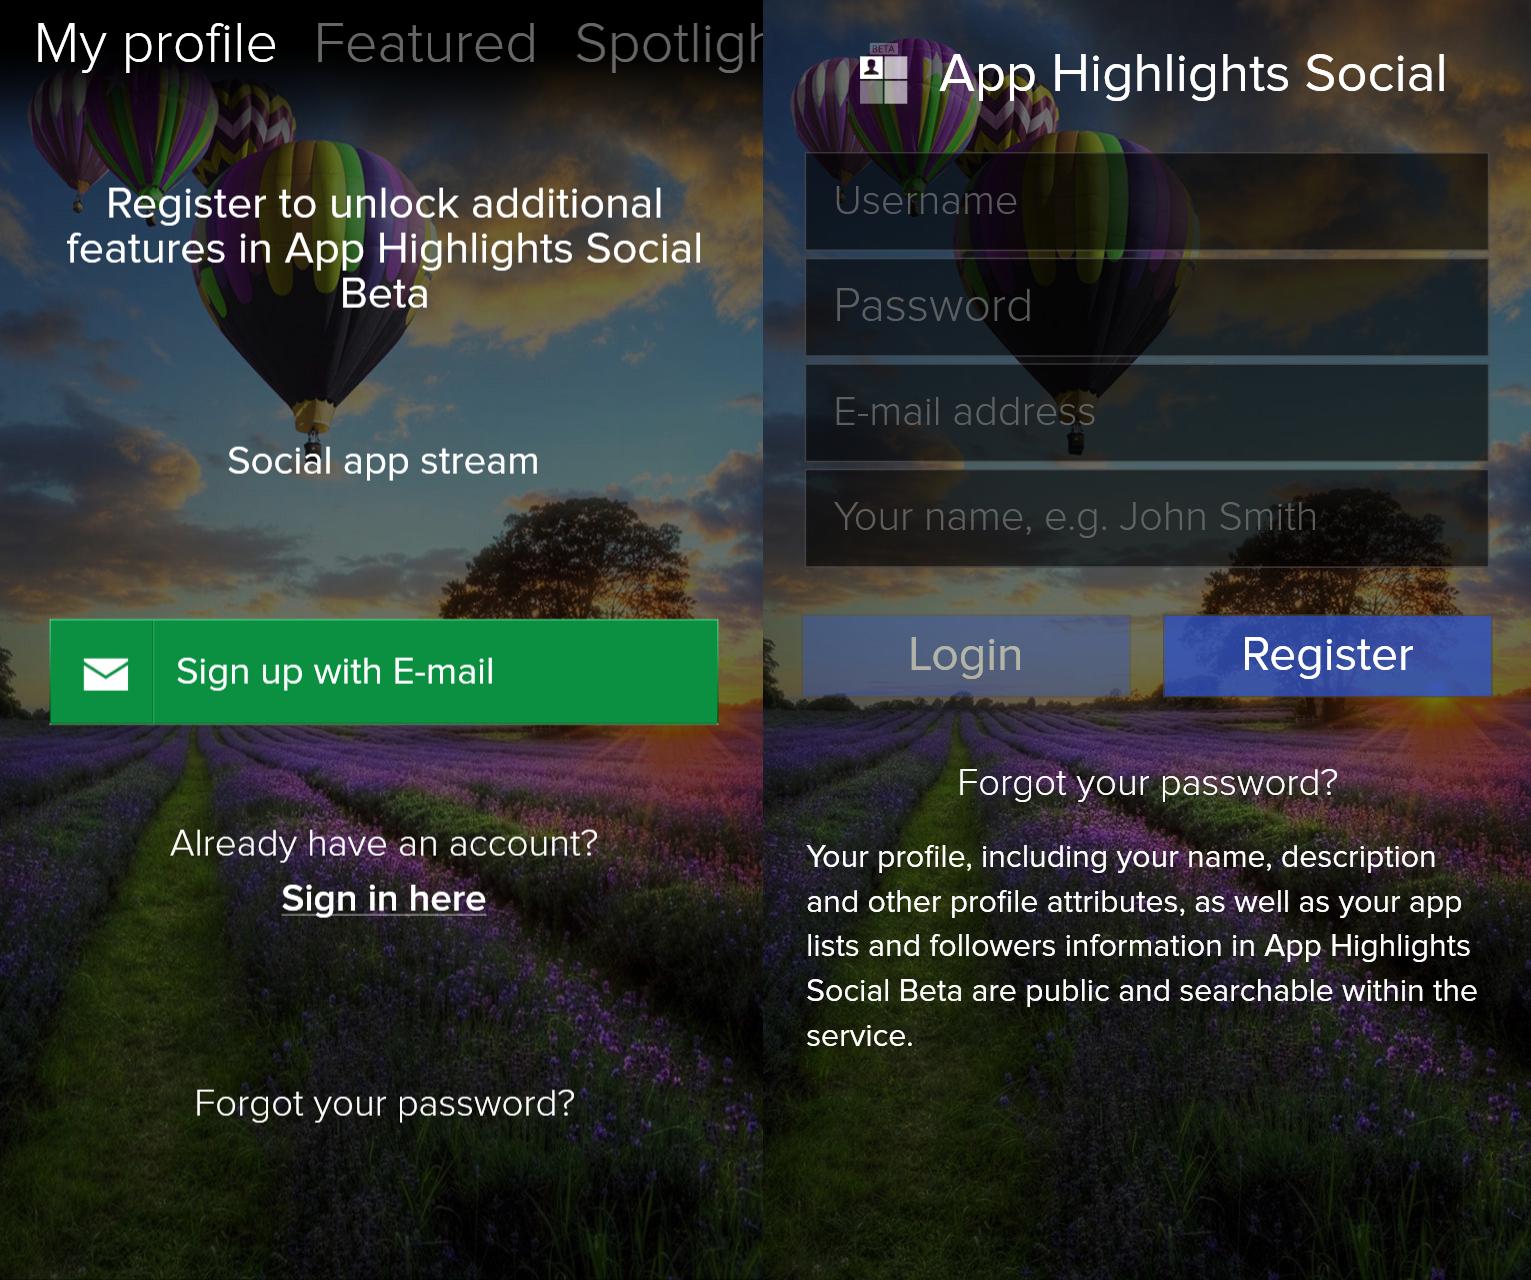 App Highlights Social 004